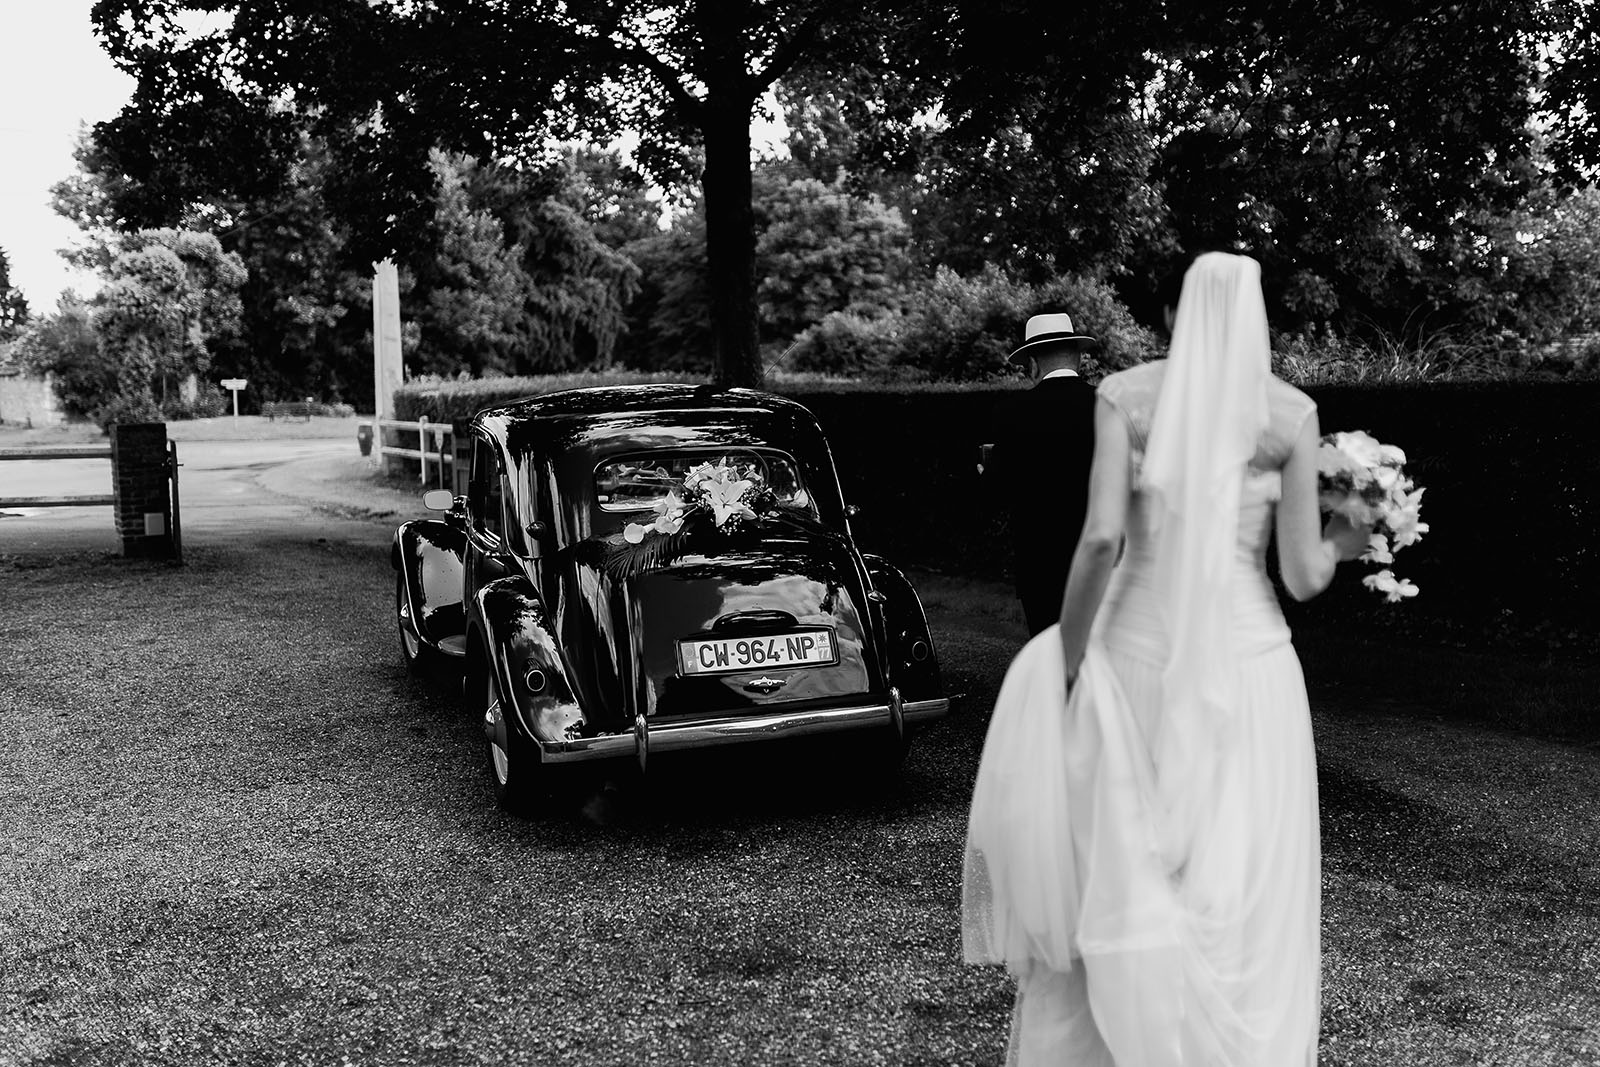 Mariage au Manoir de Corny en Normandie. La mariée rejoint sa voiture traction